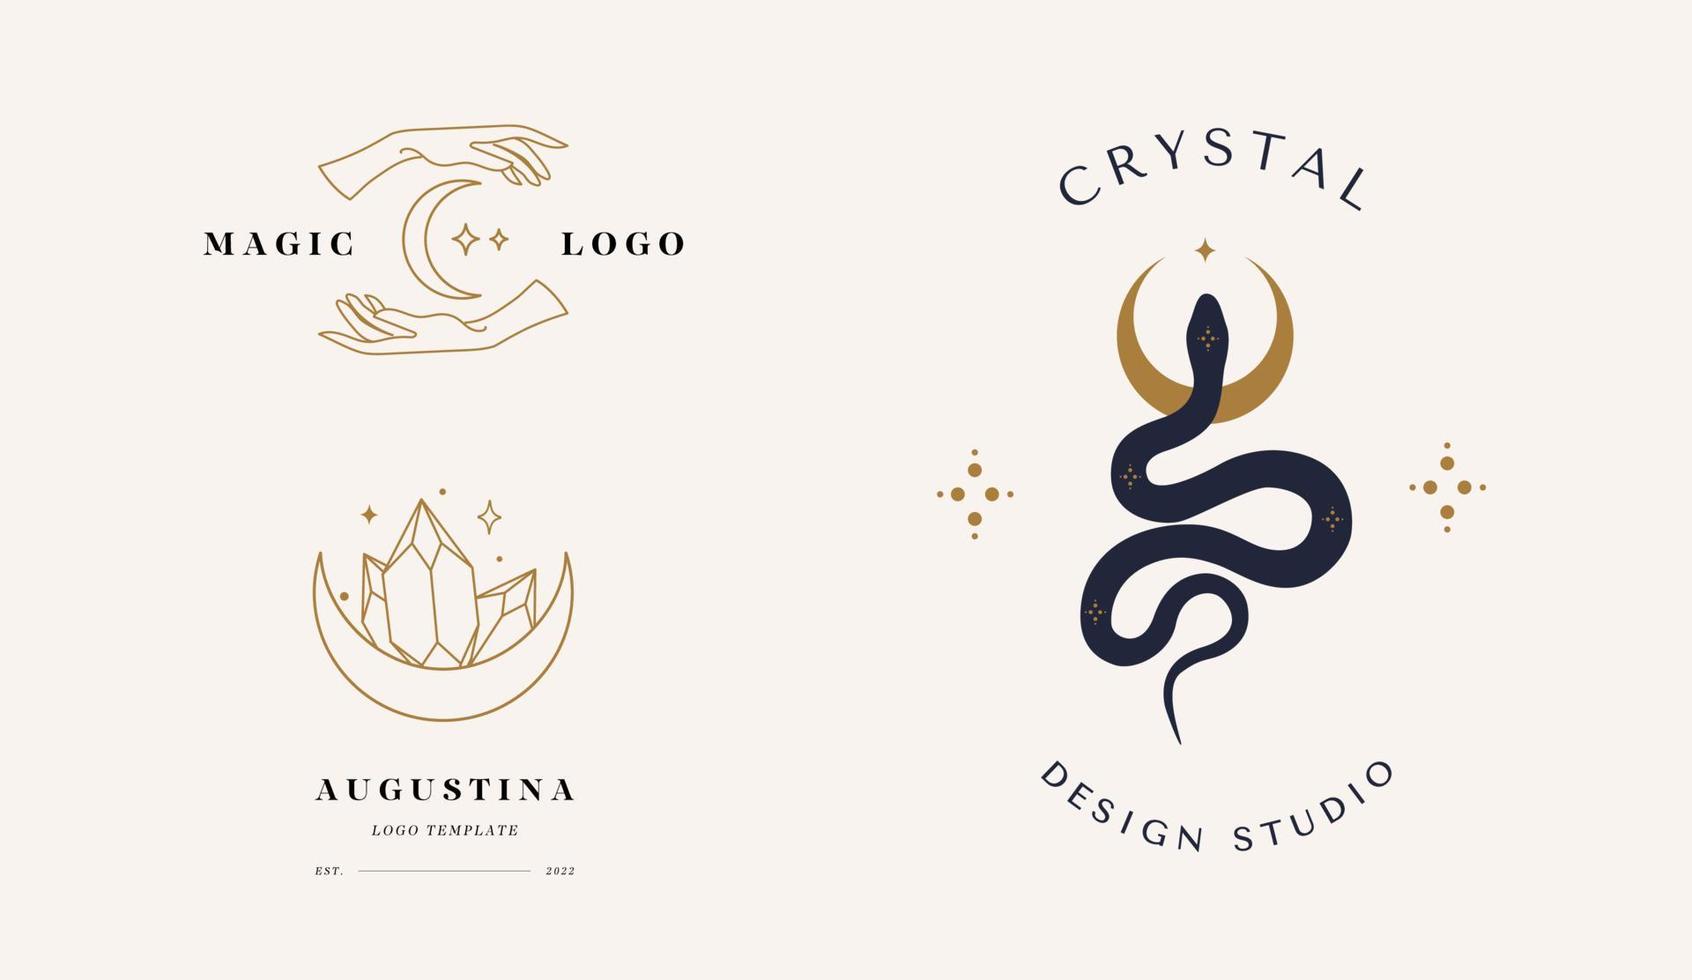 un ensemble de logos dans un style linéaire. serpent magique avec lune, étoile, mains et croissants. symboles mystiques dans un style minimaliste tendance. vecteur